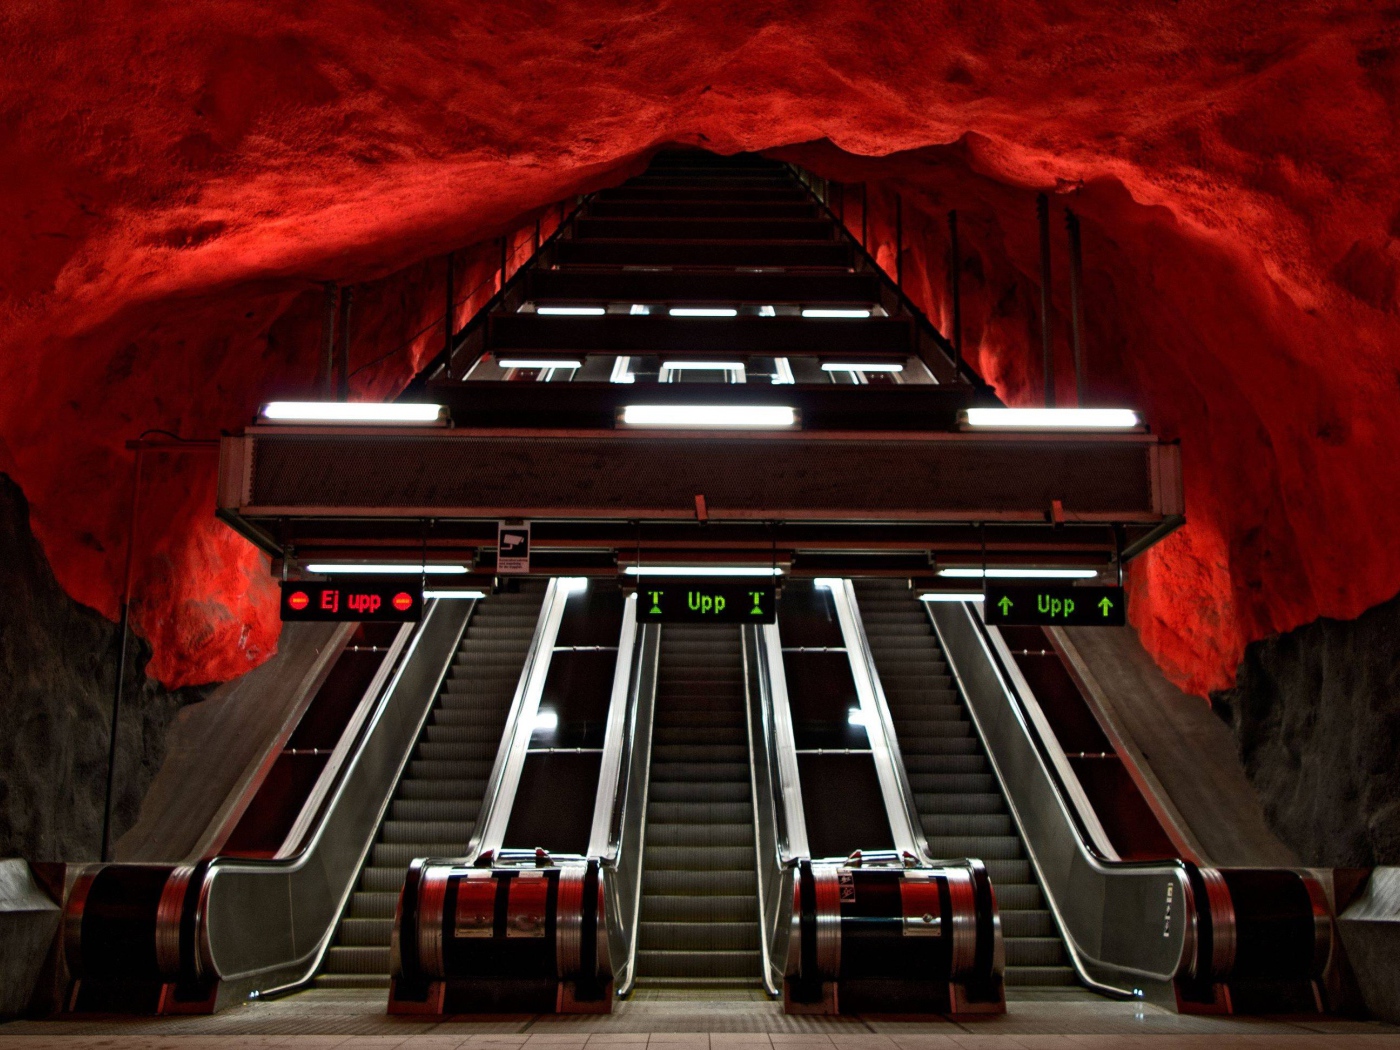 Эскалатор в метро Стокгольма